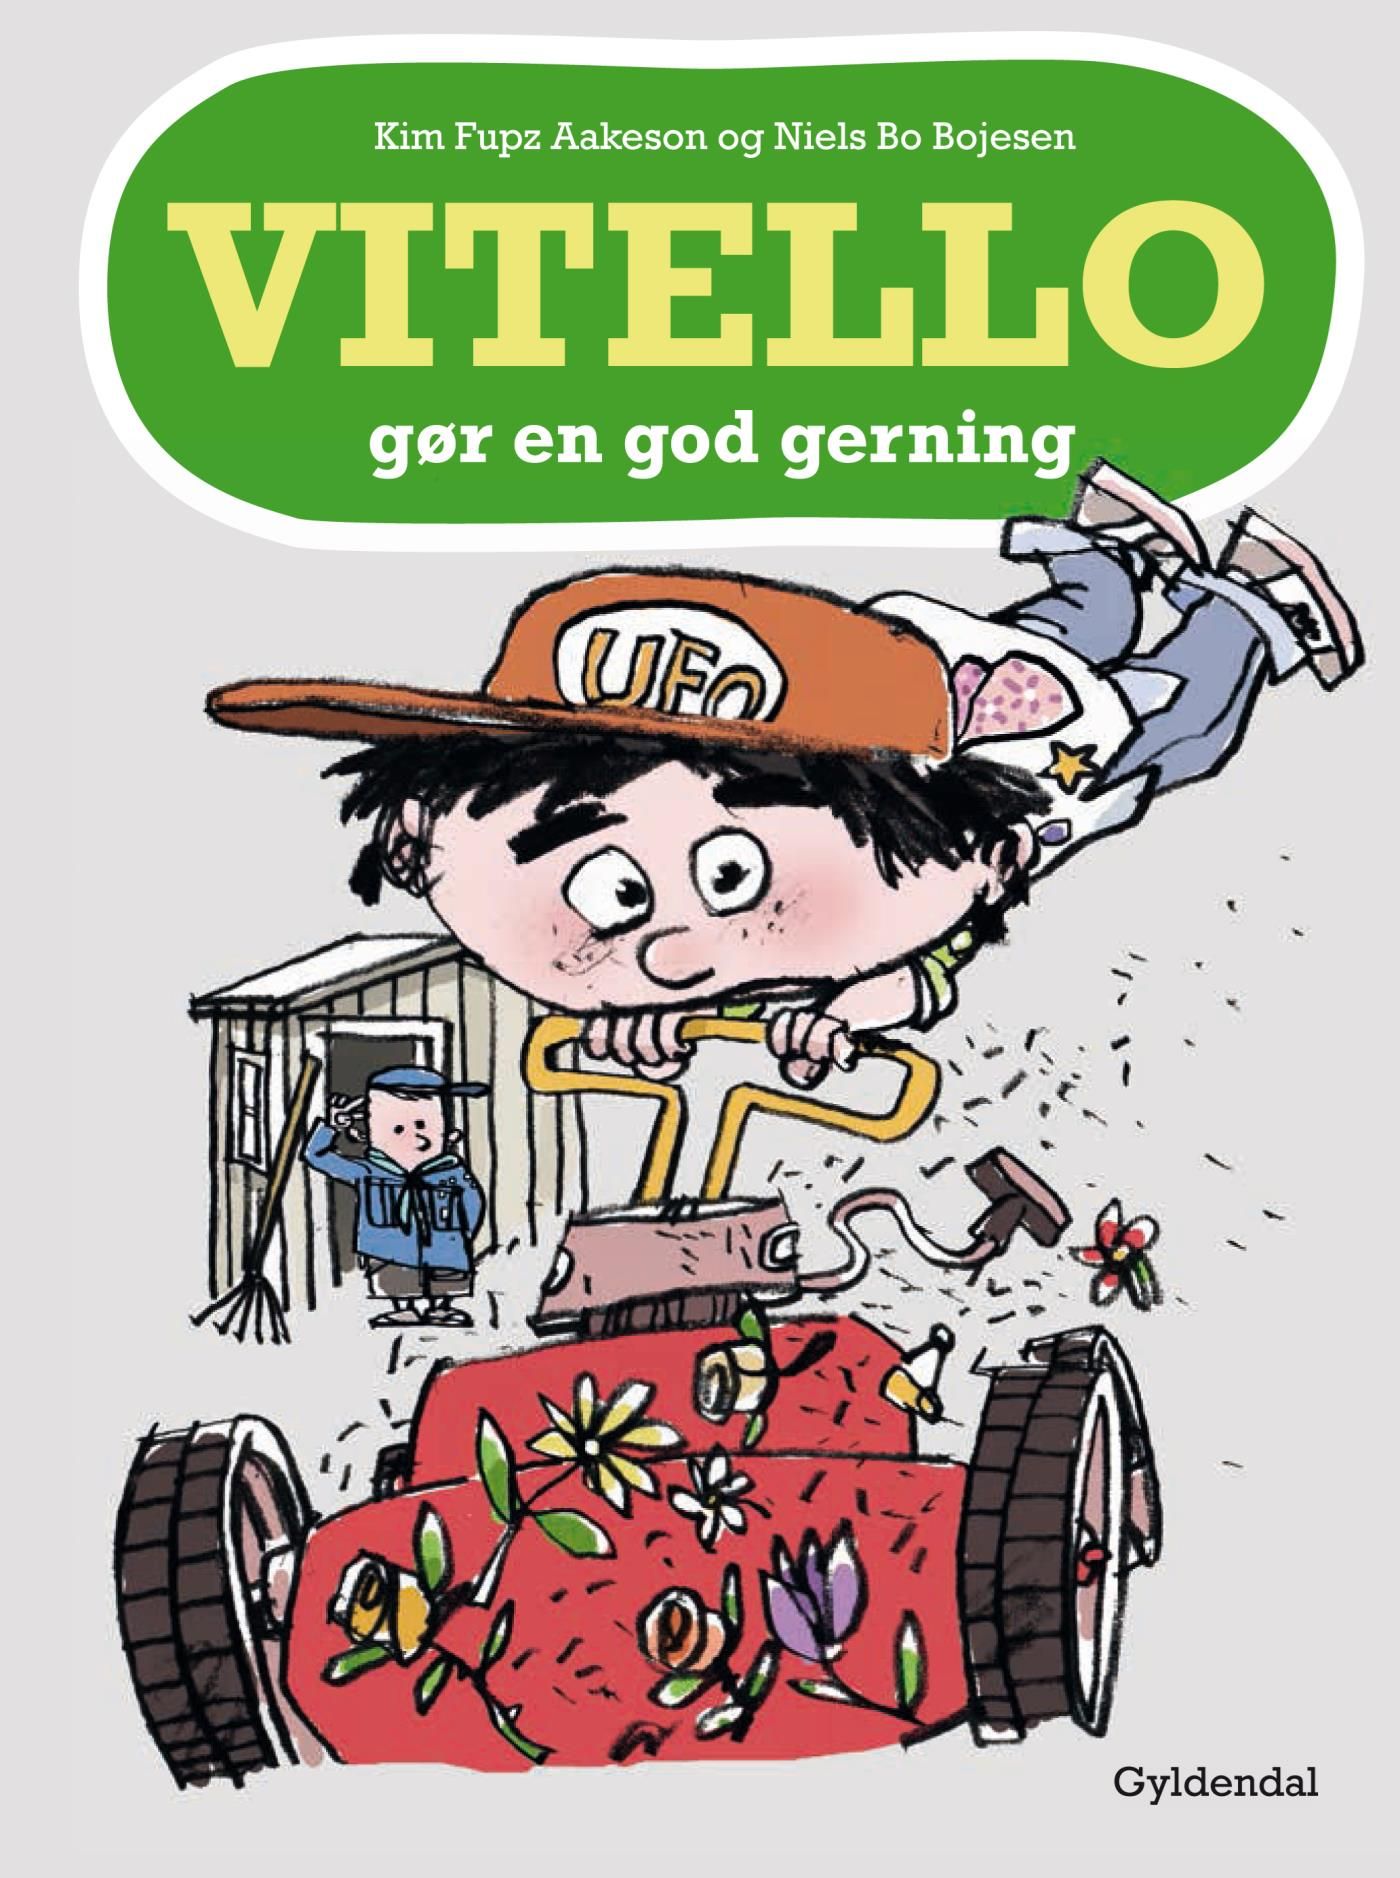 Vitello gør en god gerning - Lyt&læs, e-bok av Niels Bo Bojesen, Kim Fupz Aakeson